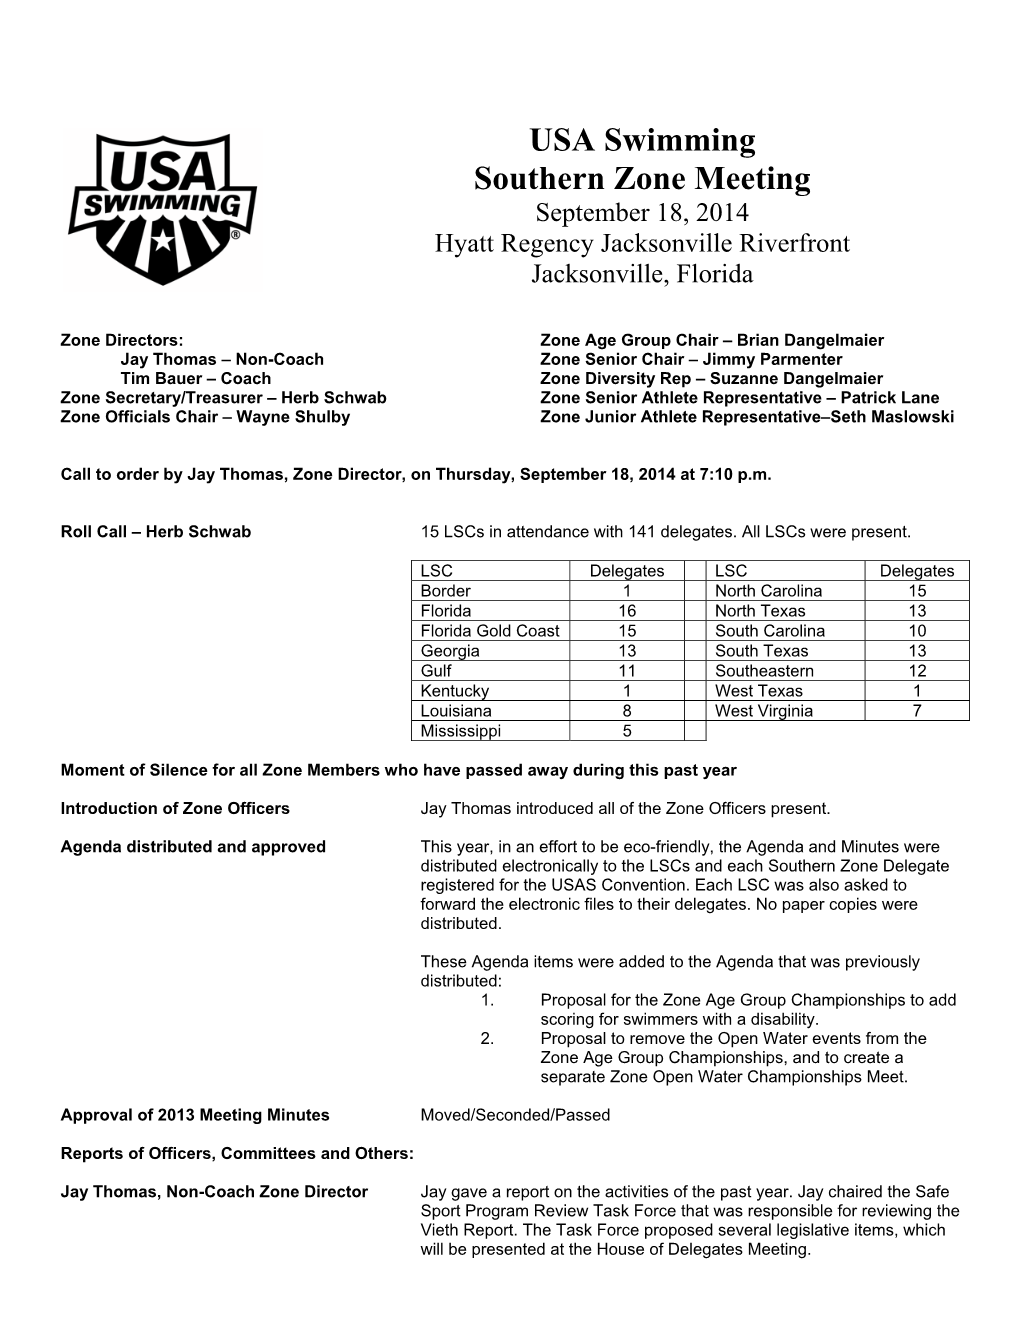 USA Swimming Southern Zone Meeting September 18, 2014 Hyatt Regency Jacksonville Riverfront